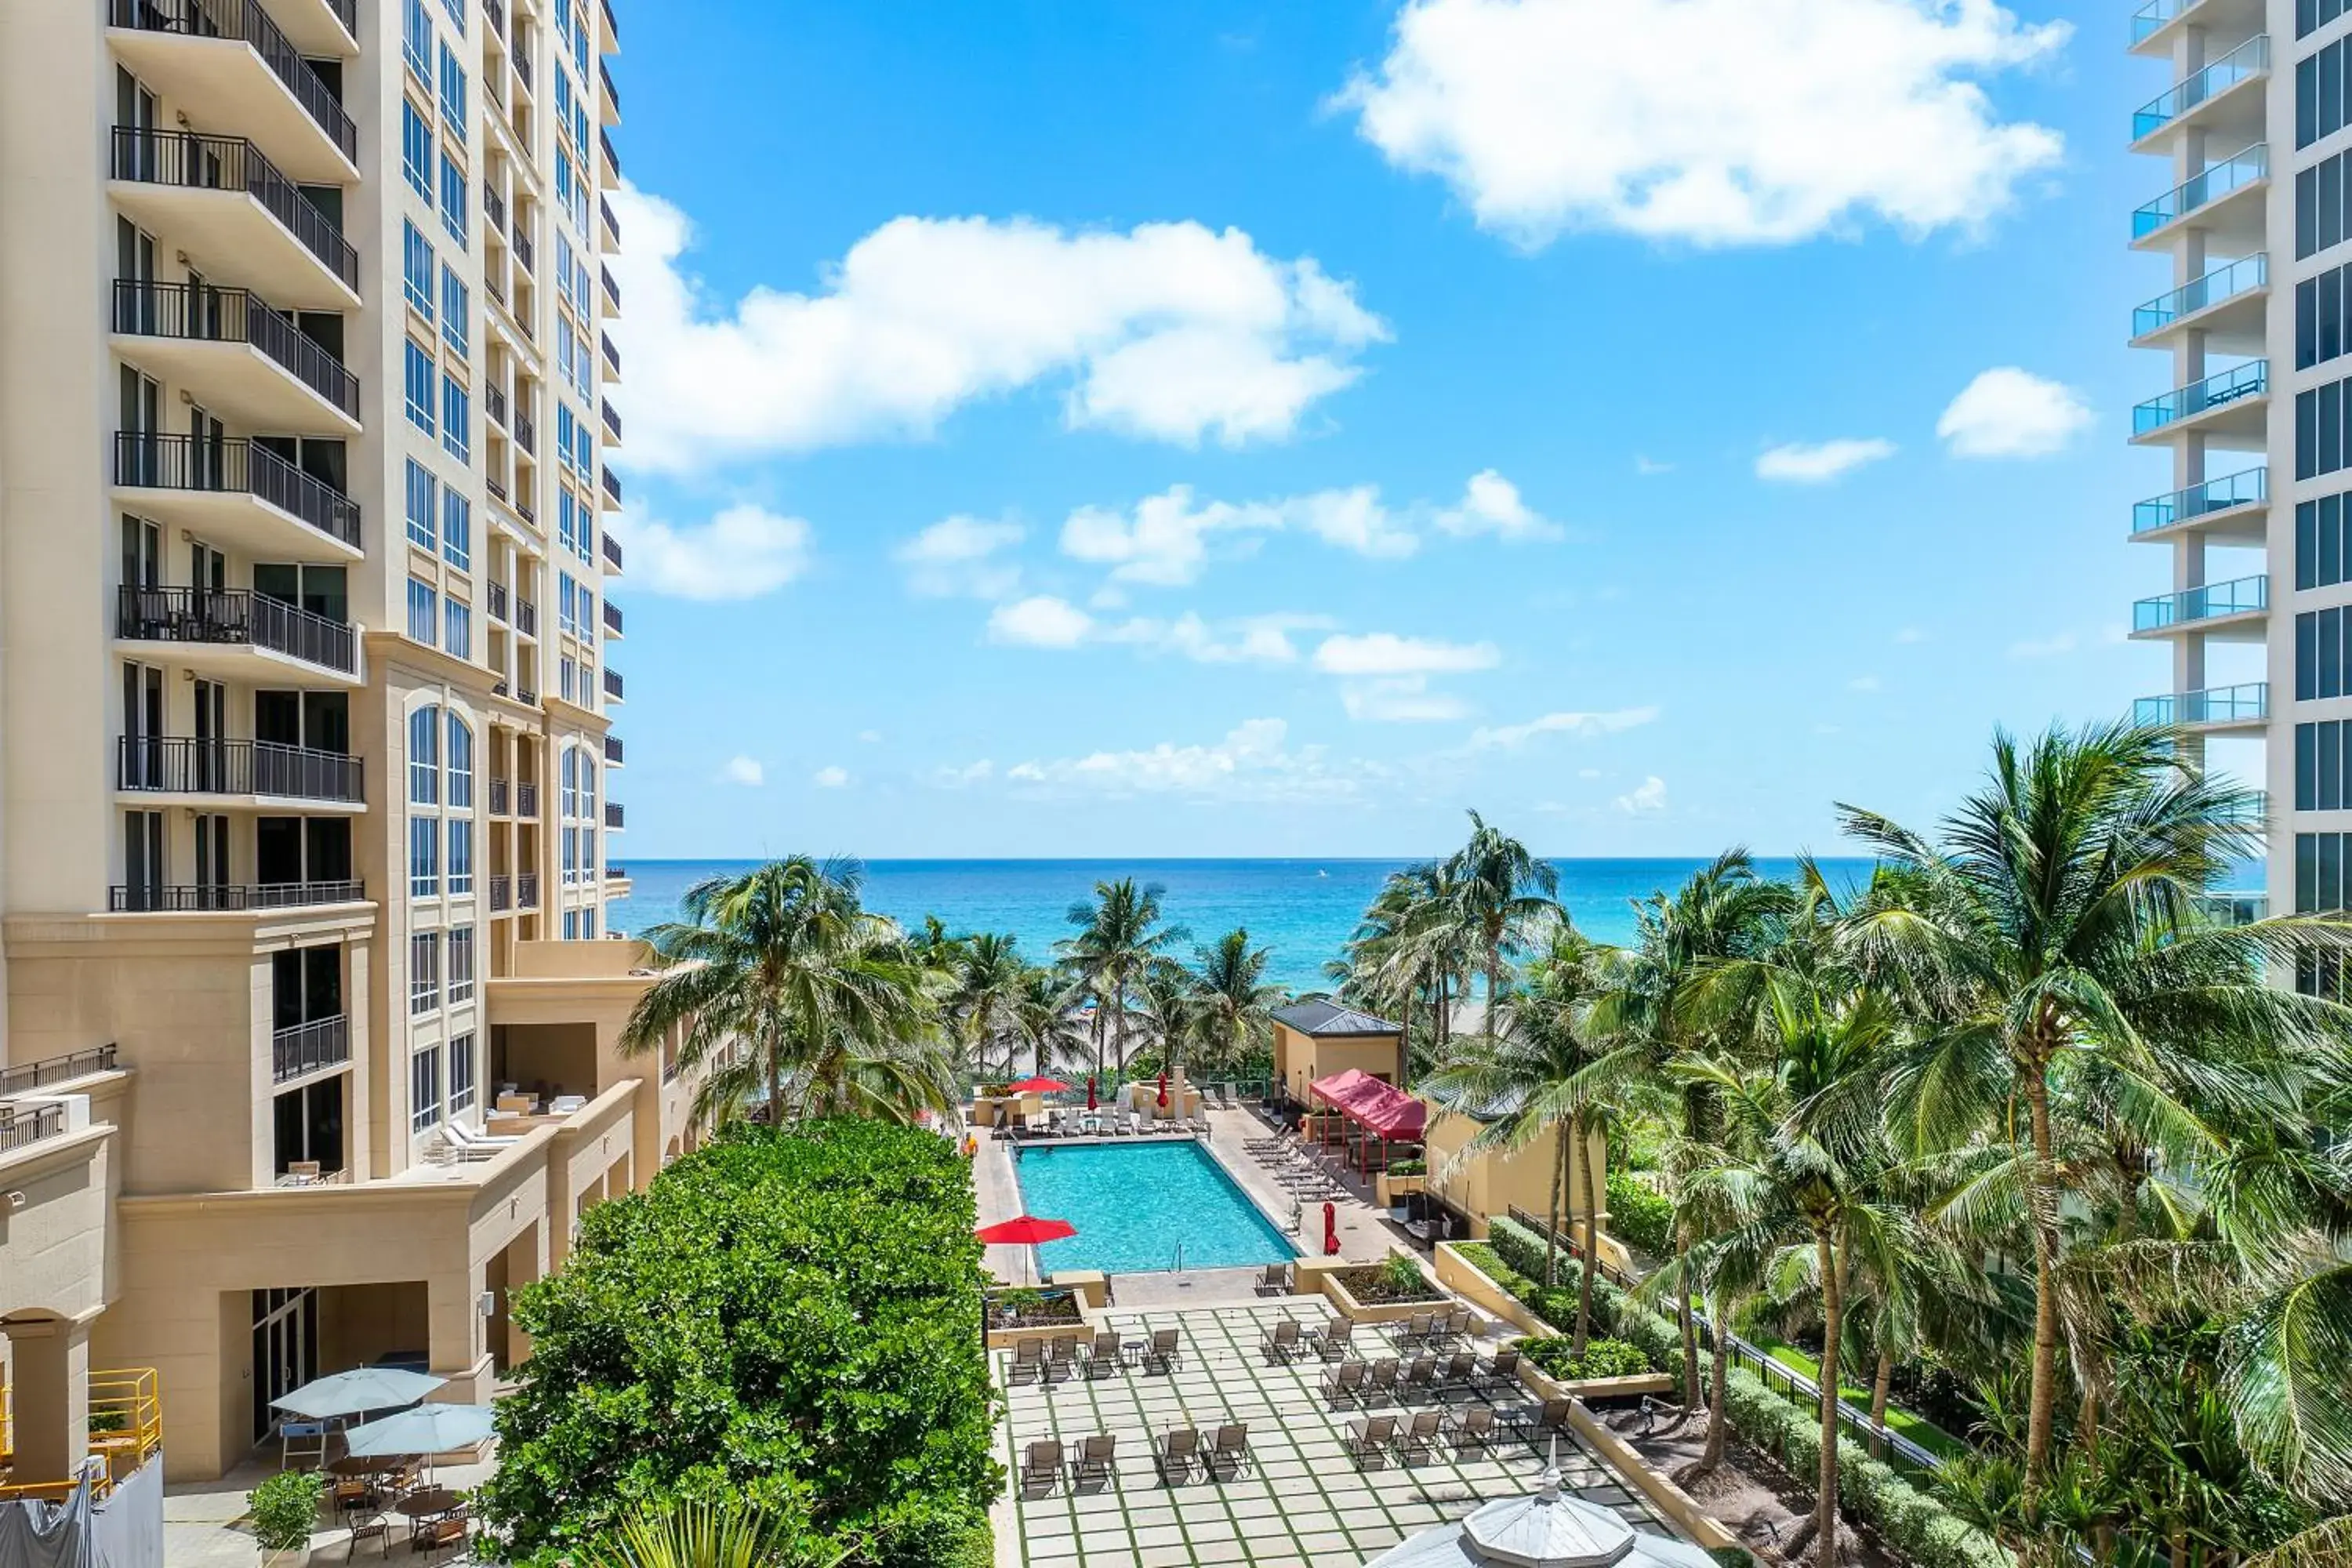 Pool View in Palm Beach Singer Island Resort & Spa Luxury Suites